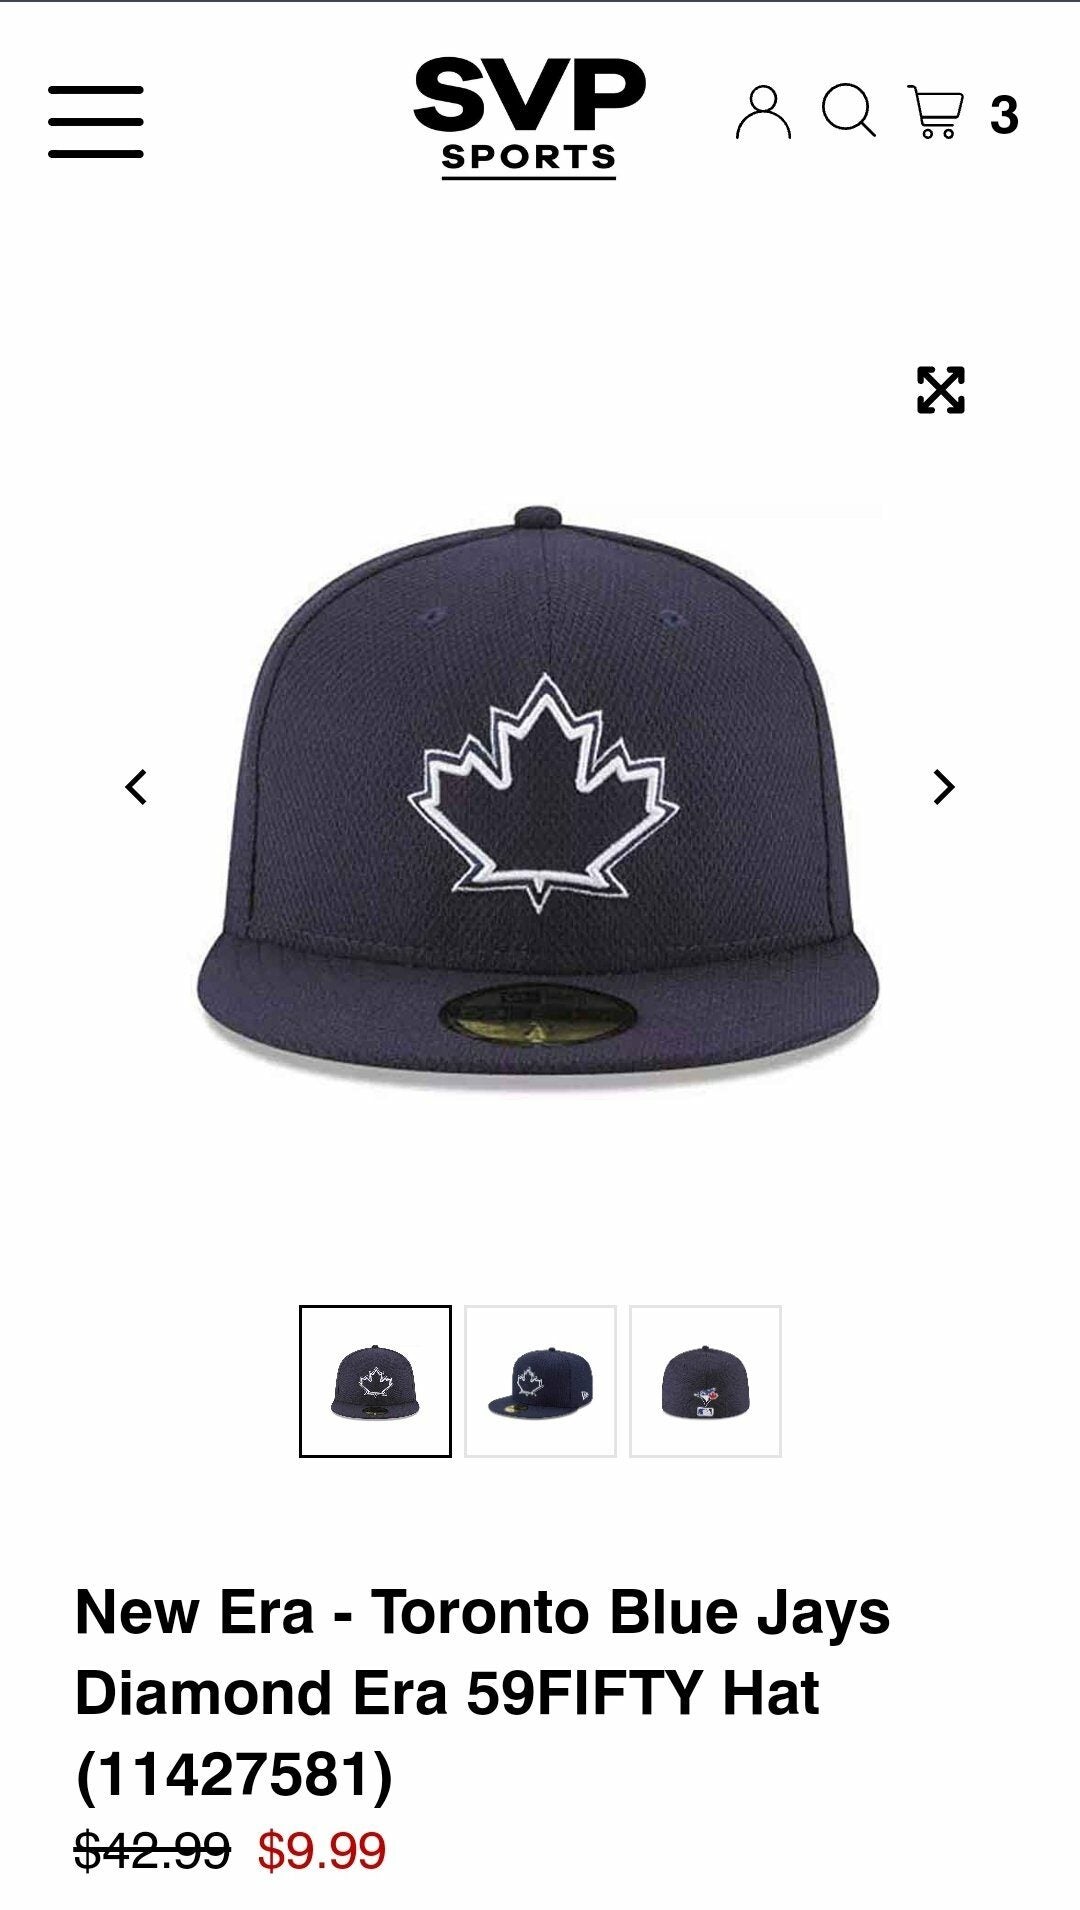 SVP Sports] New Era Blue Jays hats on sale $9.99, 14.99, more